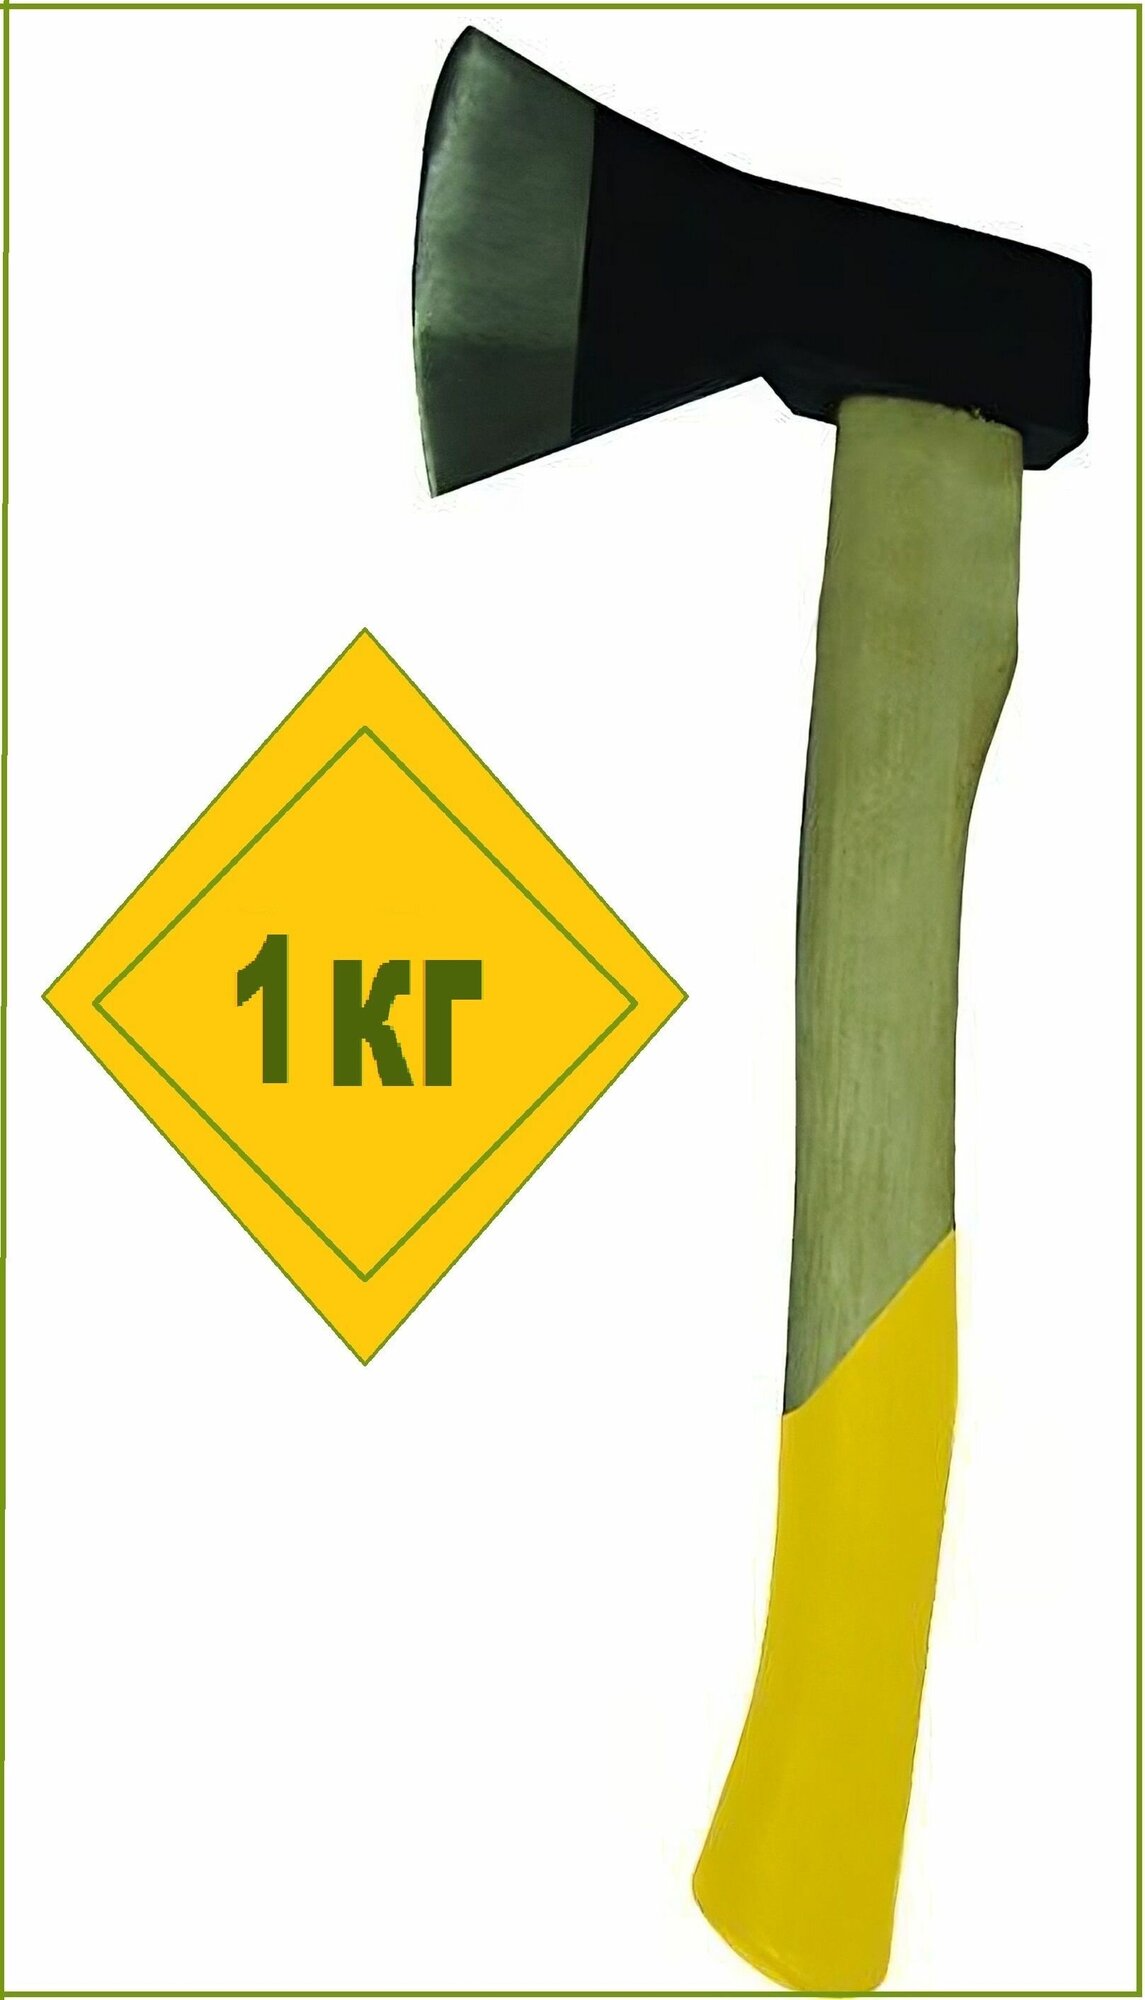 Топор "Стандарт" 1 кг, деревянная рукоятка. Инструмент для обработки всех видов дерева, столярных и плотницких работ, заготовки дров - фотография № 1